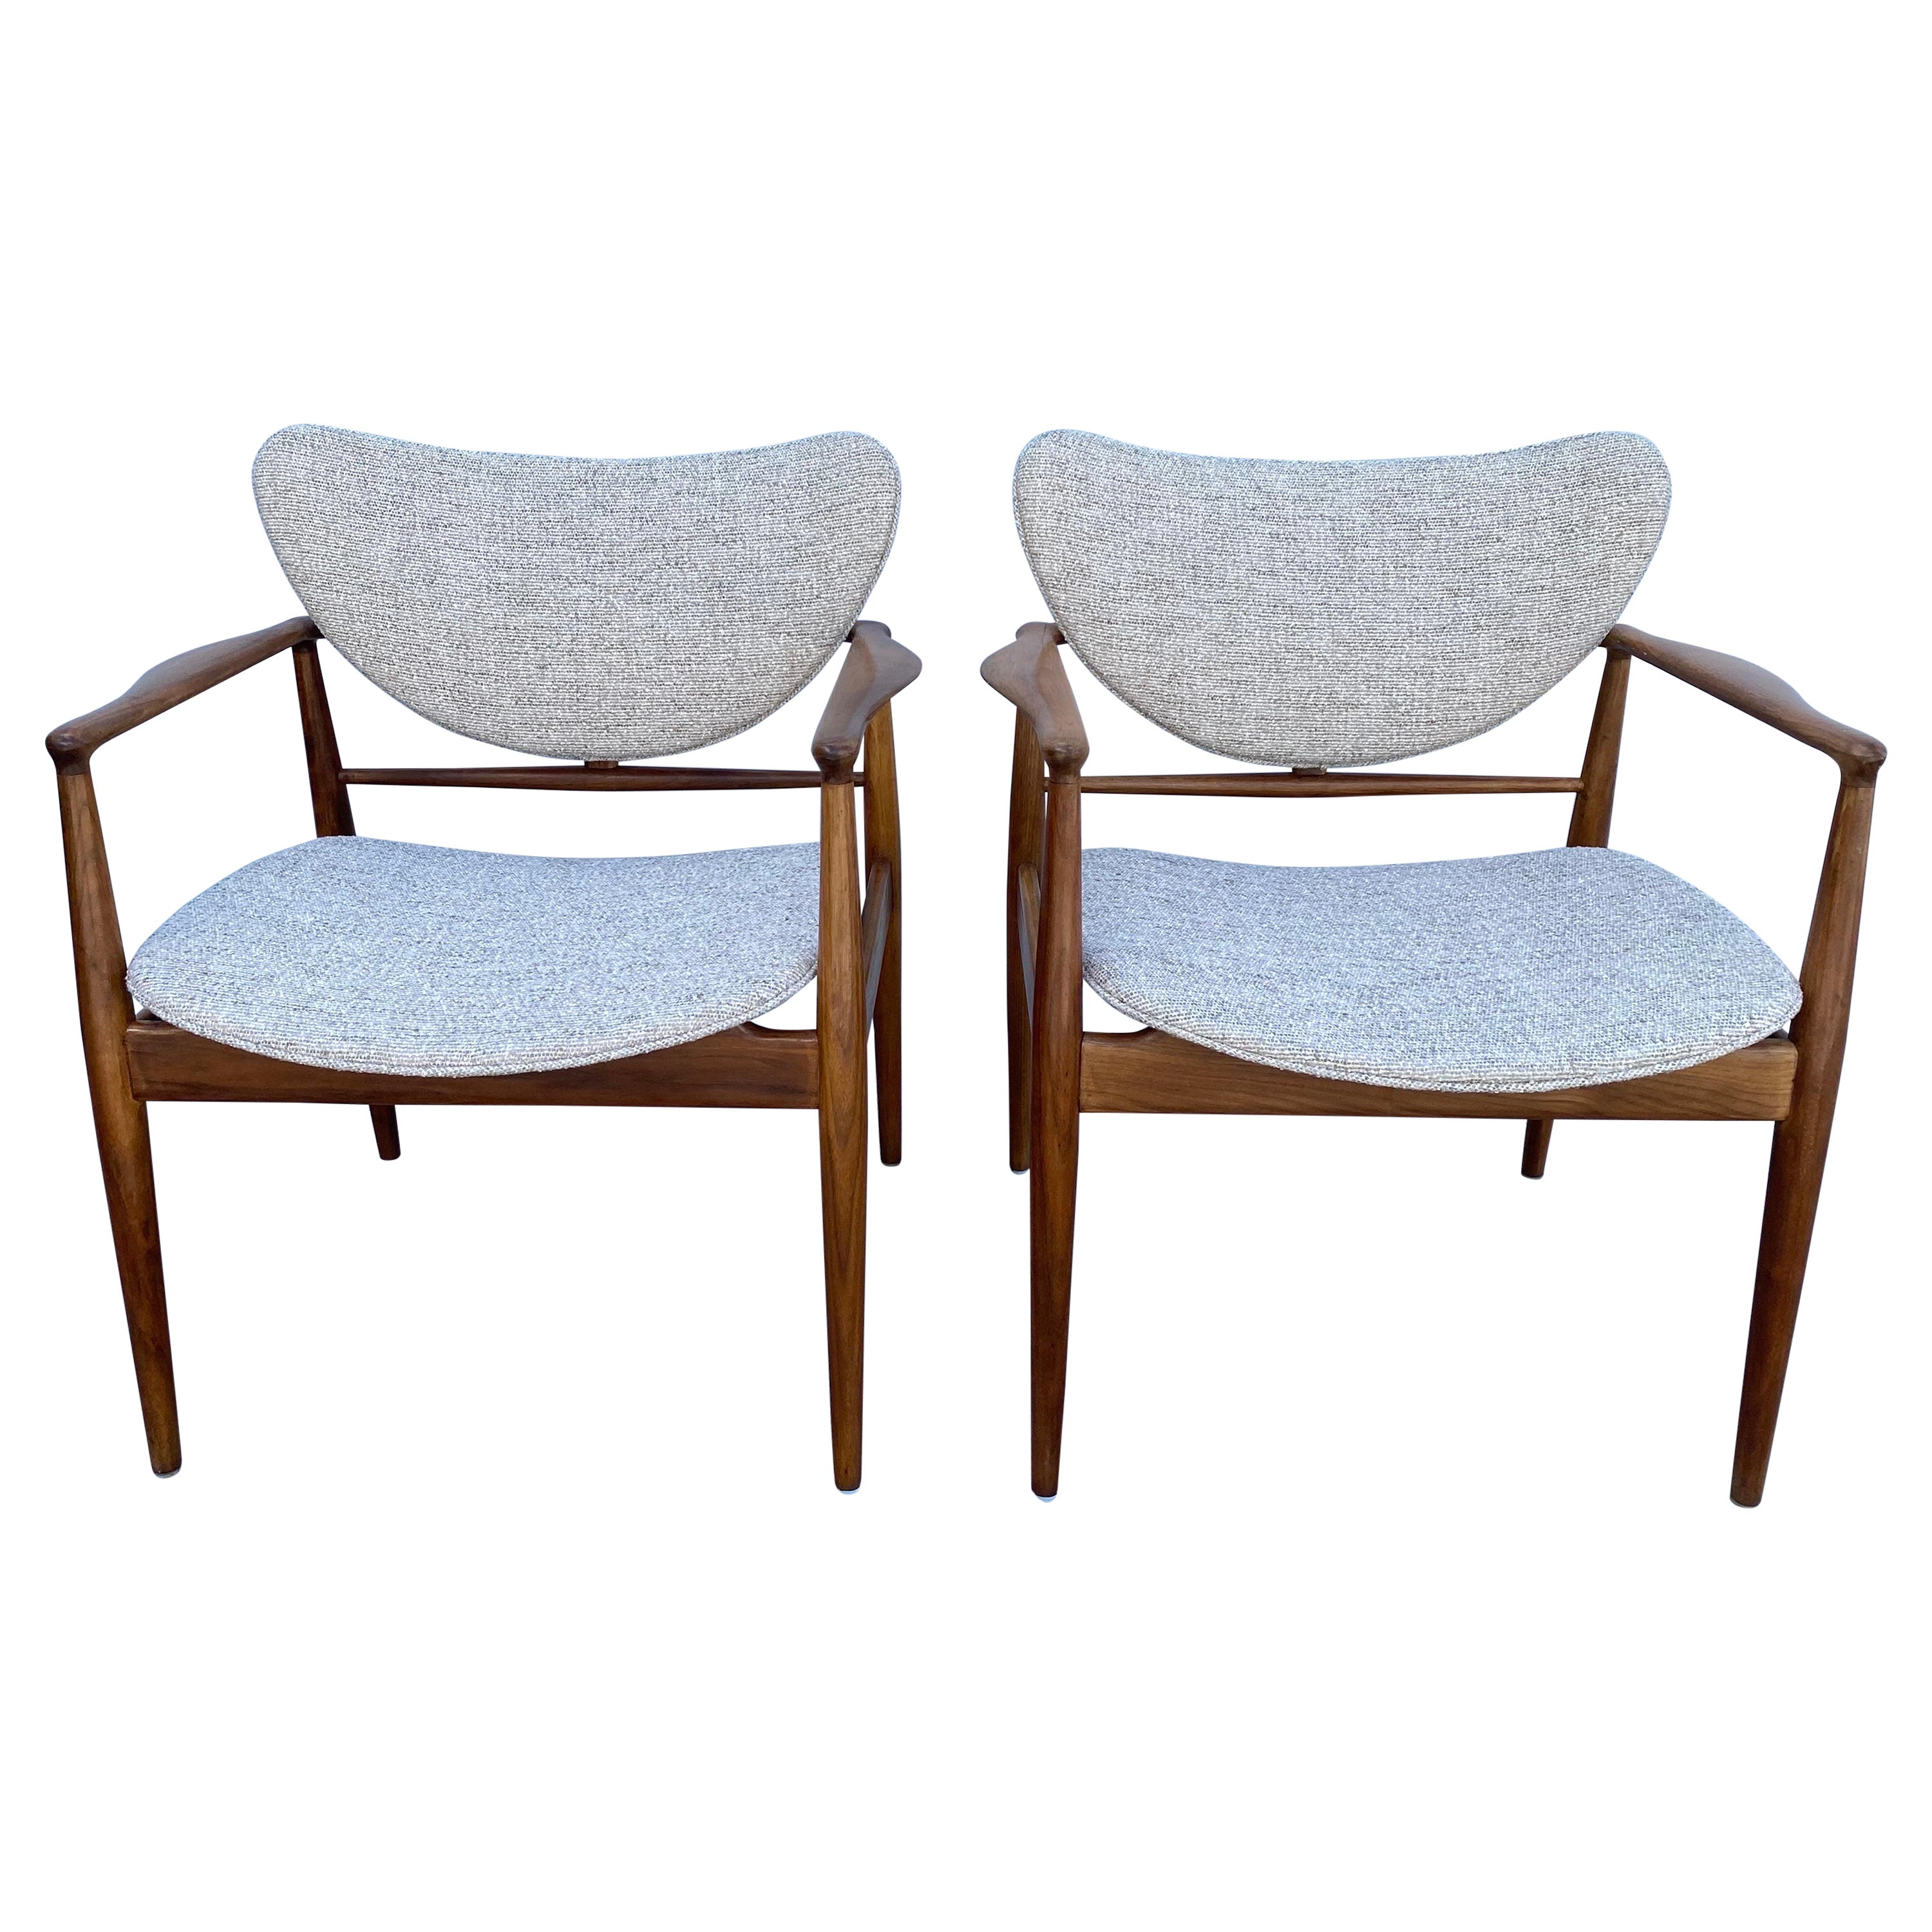 Paire de chaises modernes danoises Finn Juhl n° 48 pour Baker, années 1950